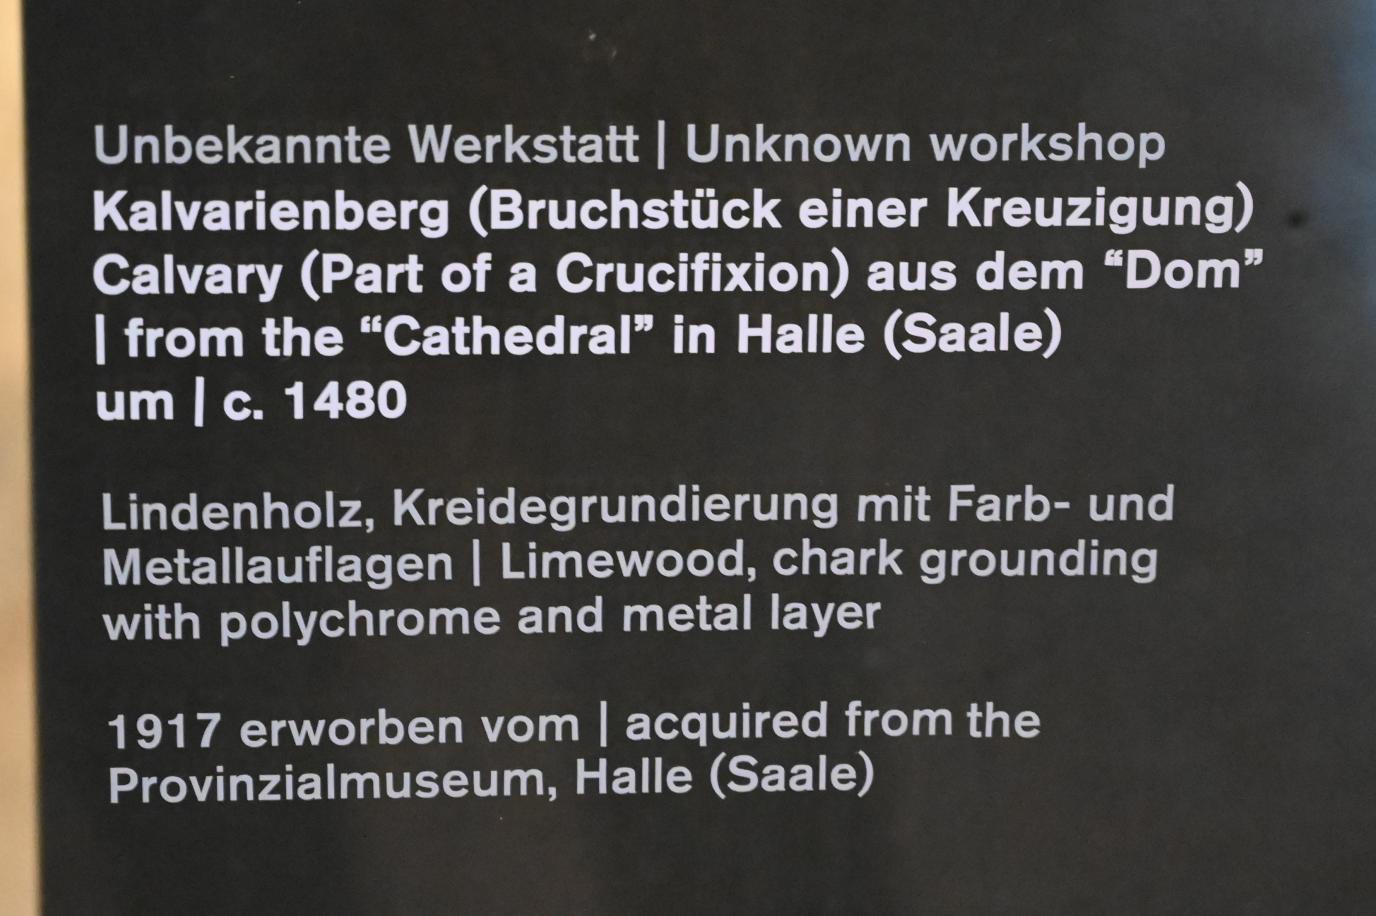 Kalvarienberg (Bruchstück einer Kreuzigung), Halle (Saale), Dom zu Halle, jetzt Halle (Saale), Kunstmuseum Moritzburg, Mittelalter Saal 2, um 1480, Bild 2/2